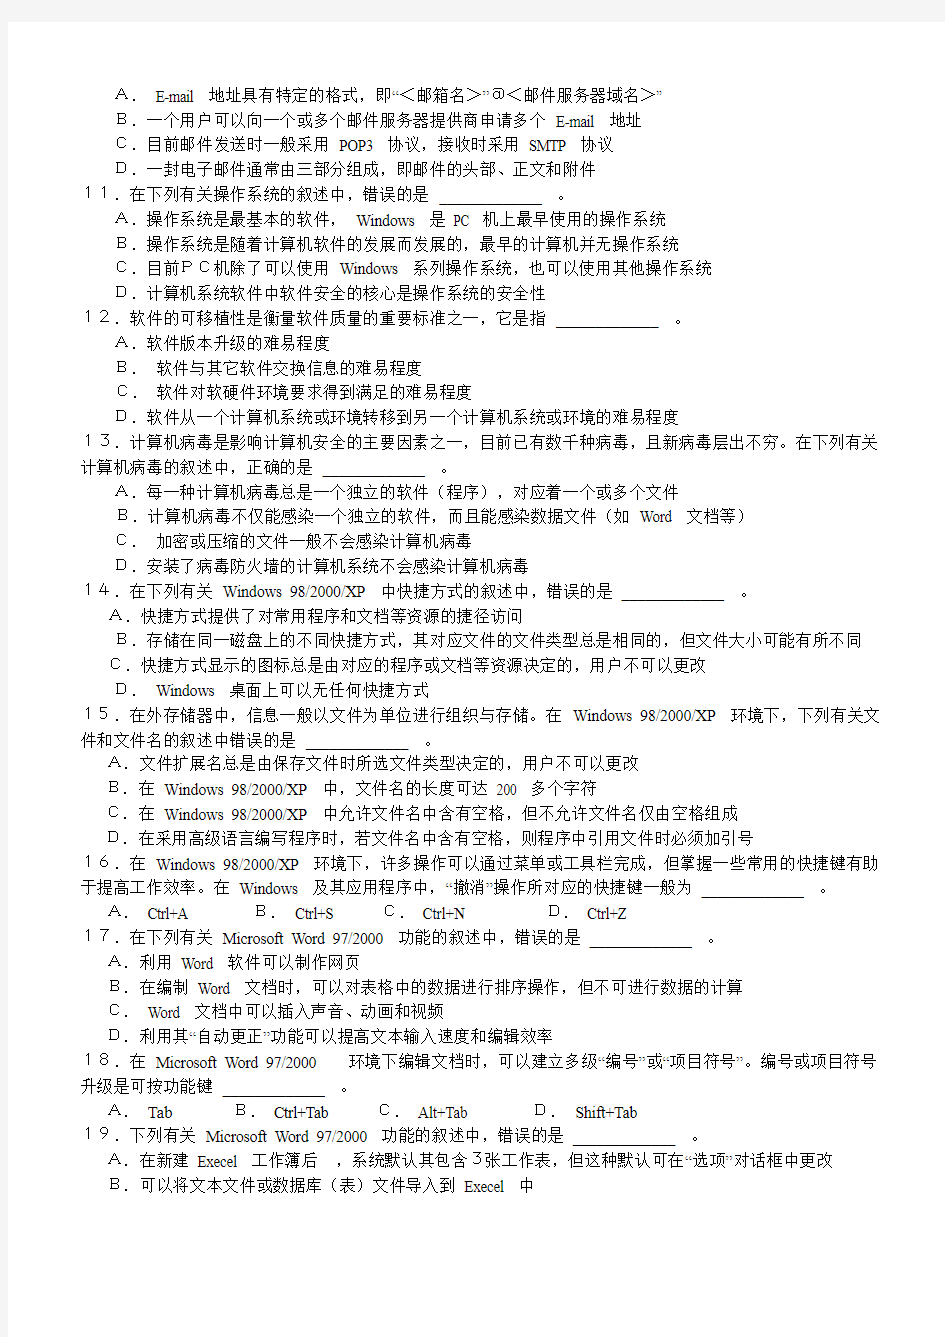 江苏省计算机vfp考试历年真题2005-2010